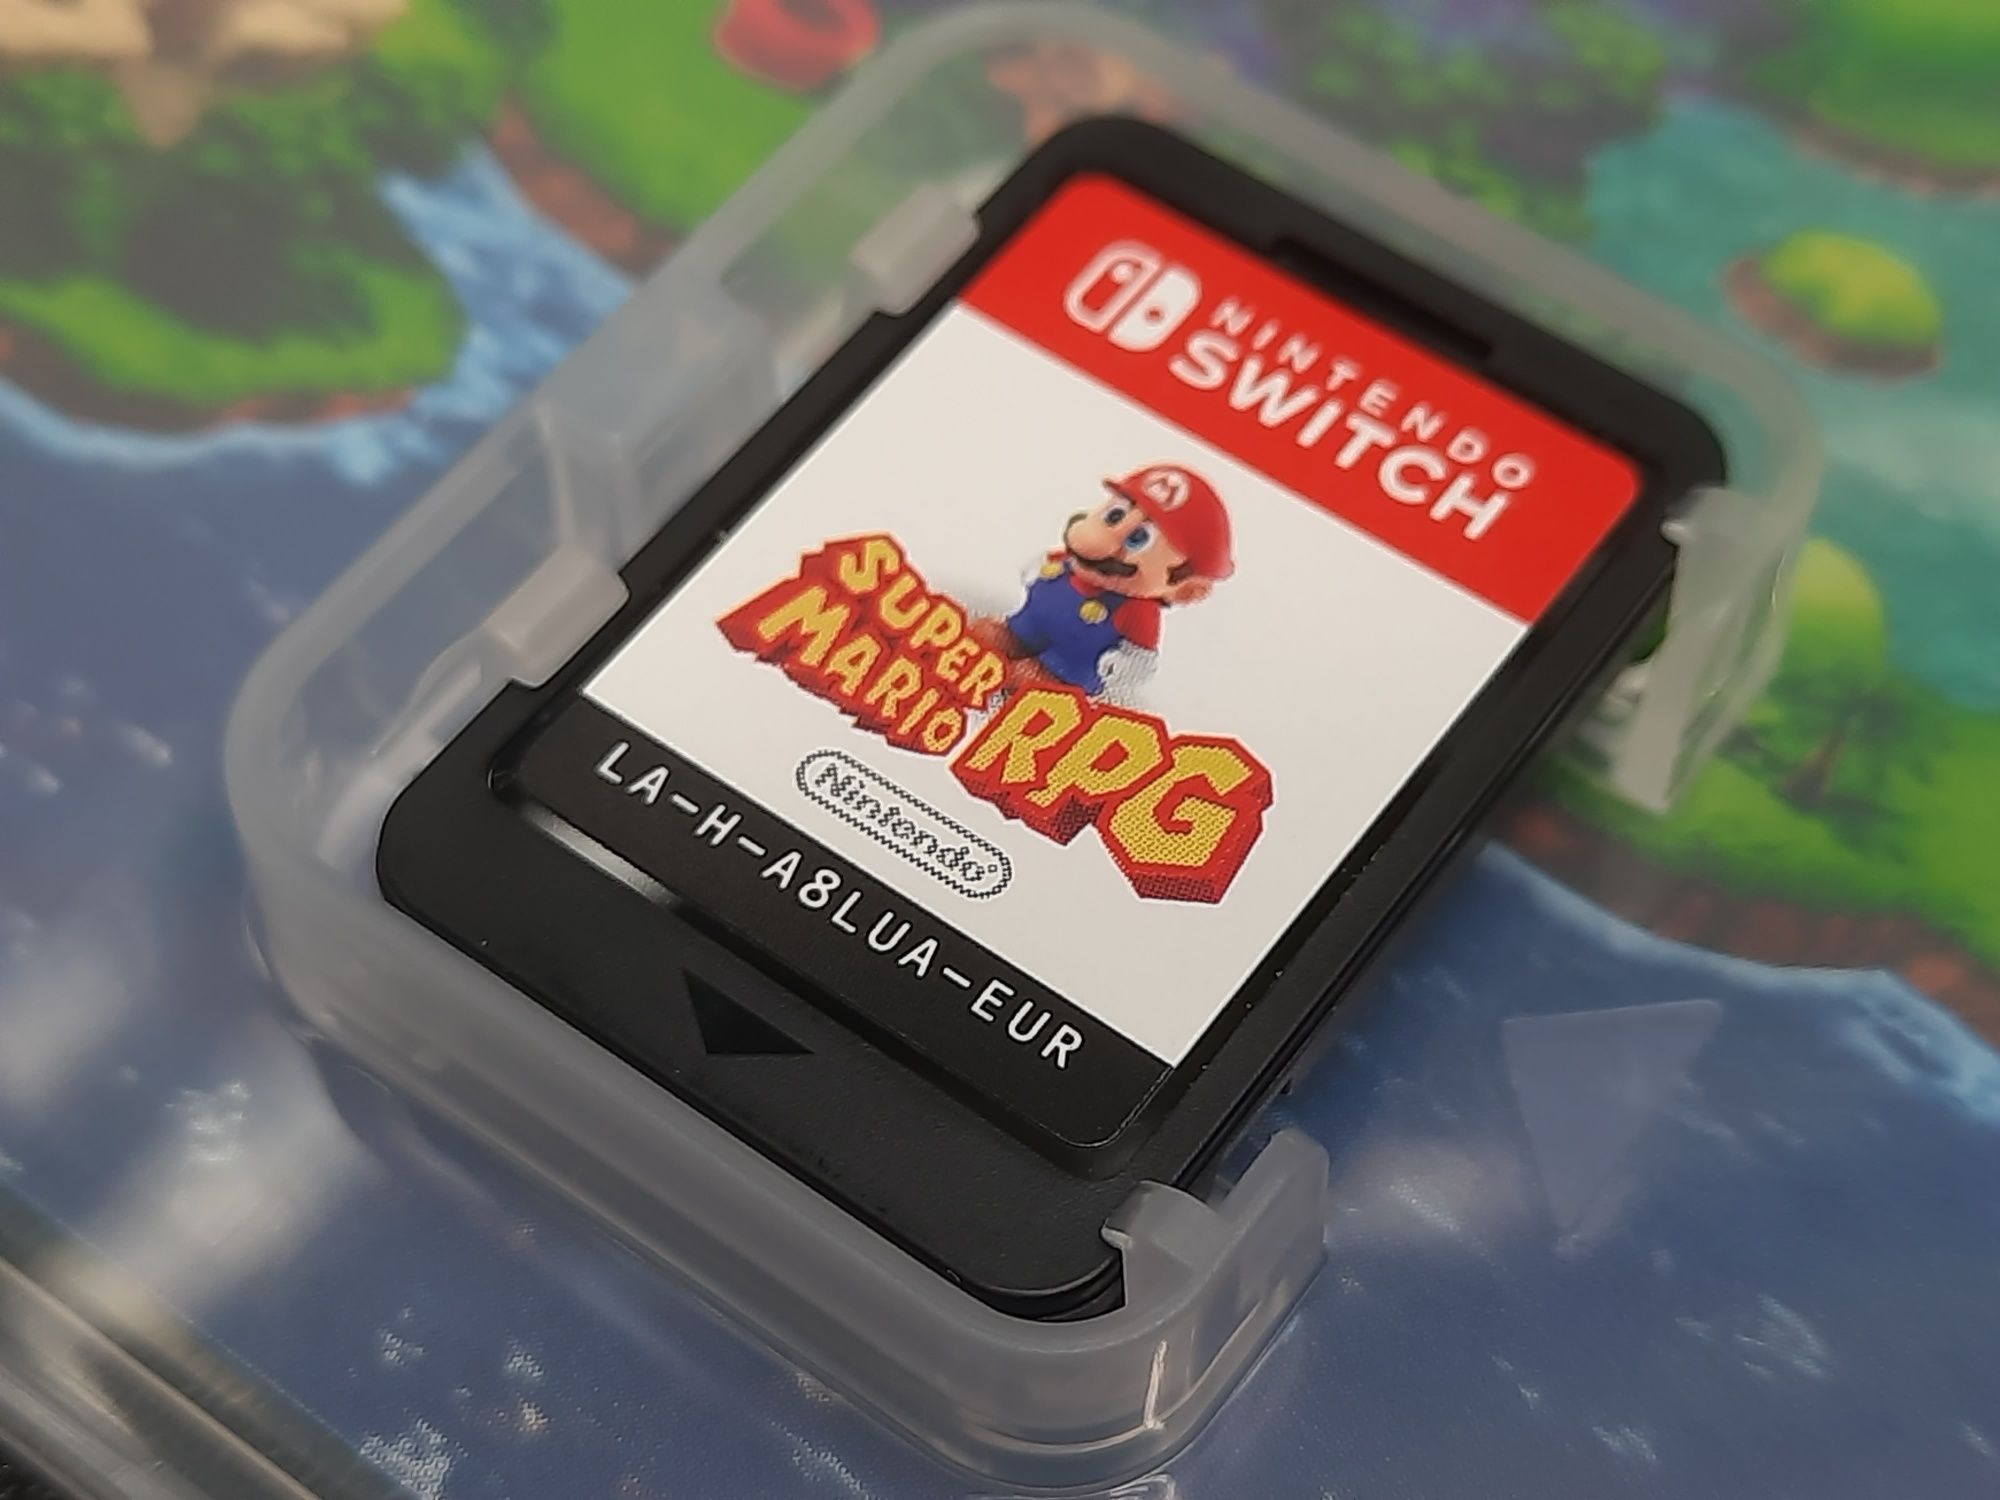 Super Mario RPG Switch